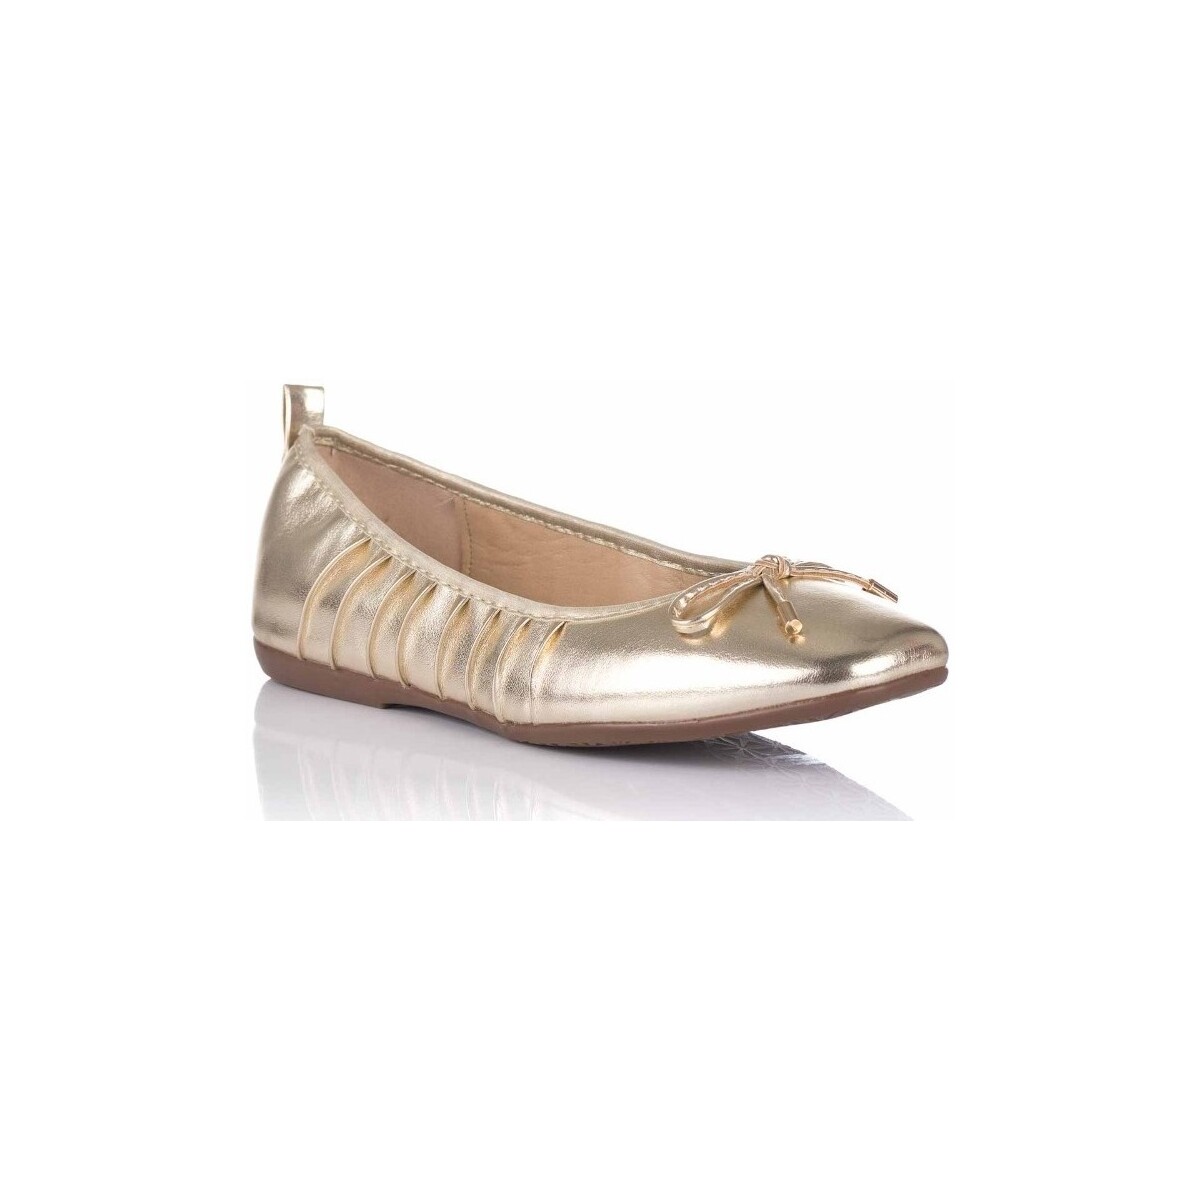 Schuhe Damen Ballerinas D'angela DKO26112 Gold